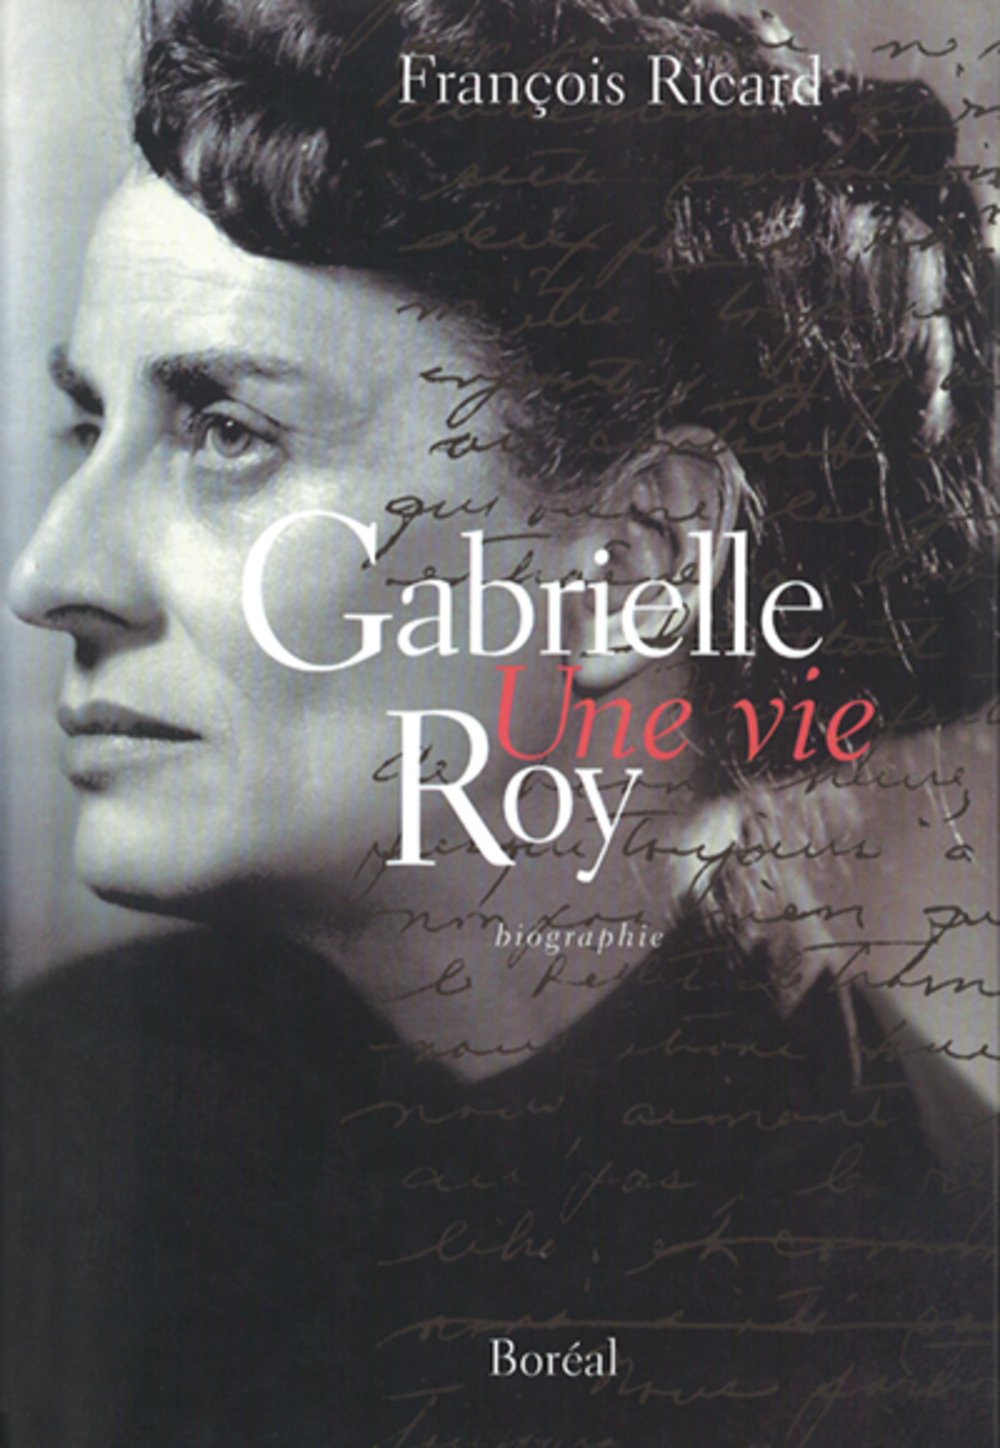 Gabrielle Roy : Une vie - François Ricard